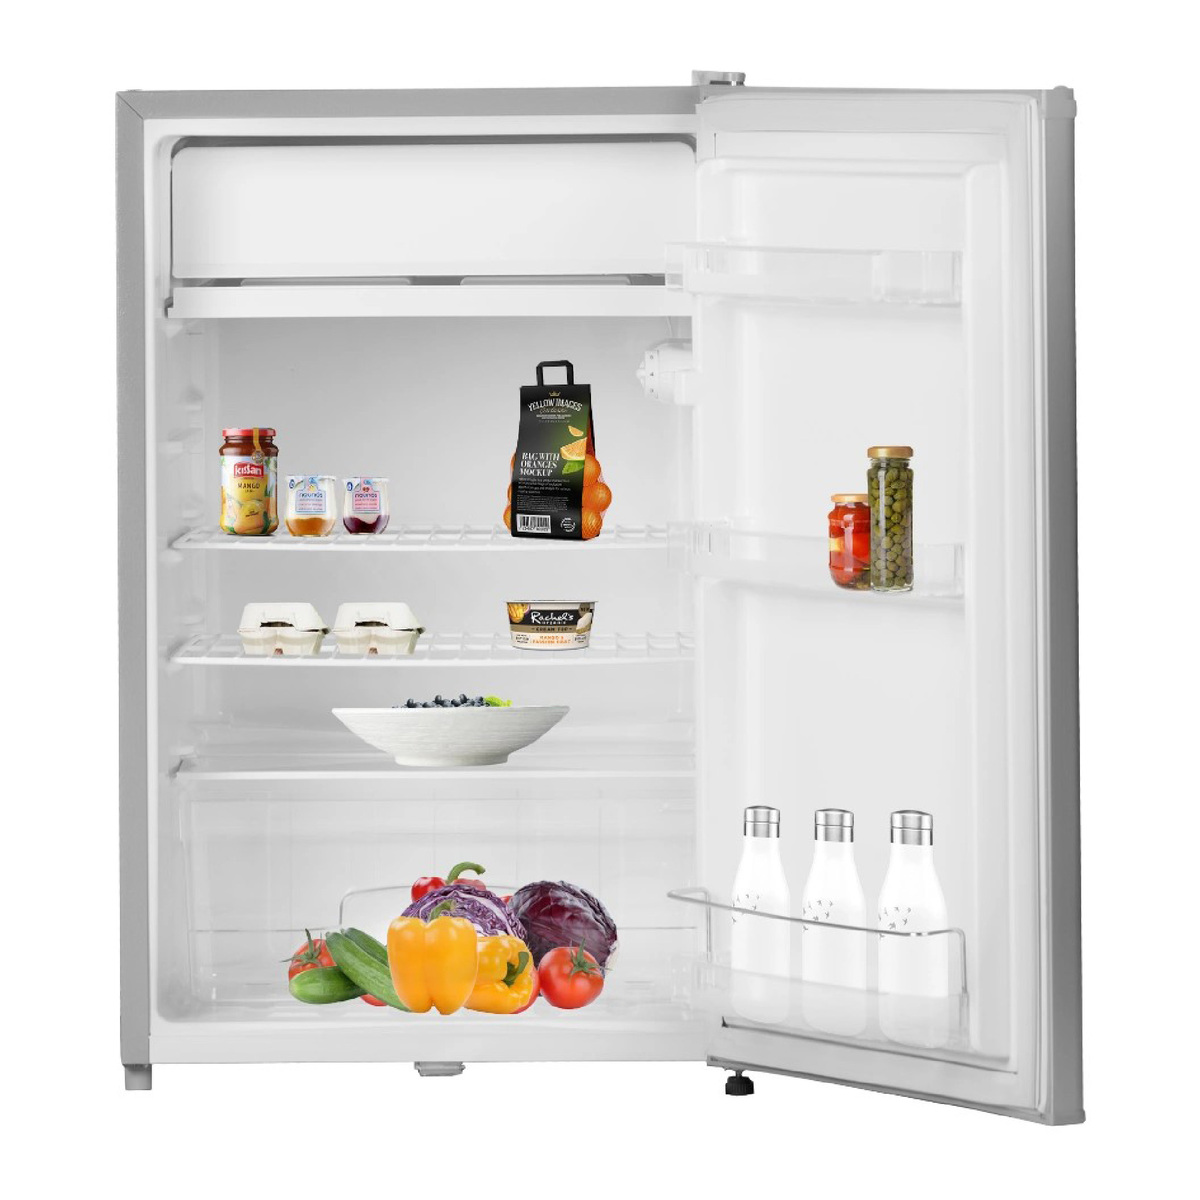 Terim Single Door Refrigerator, 150 L, Silver, TERR150S